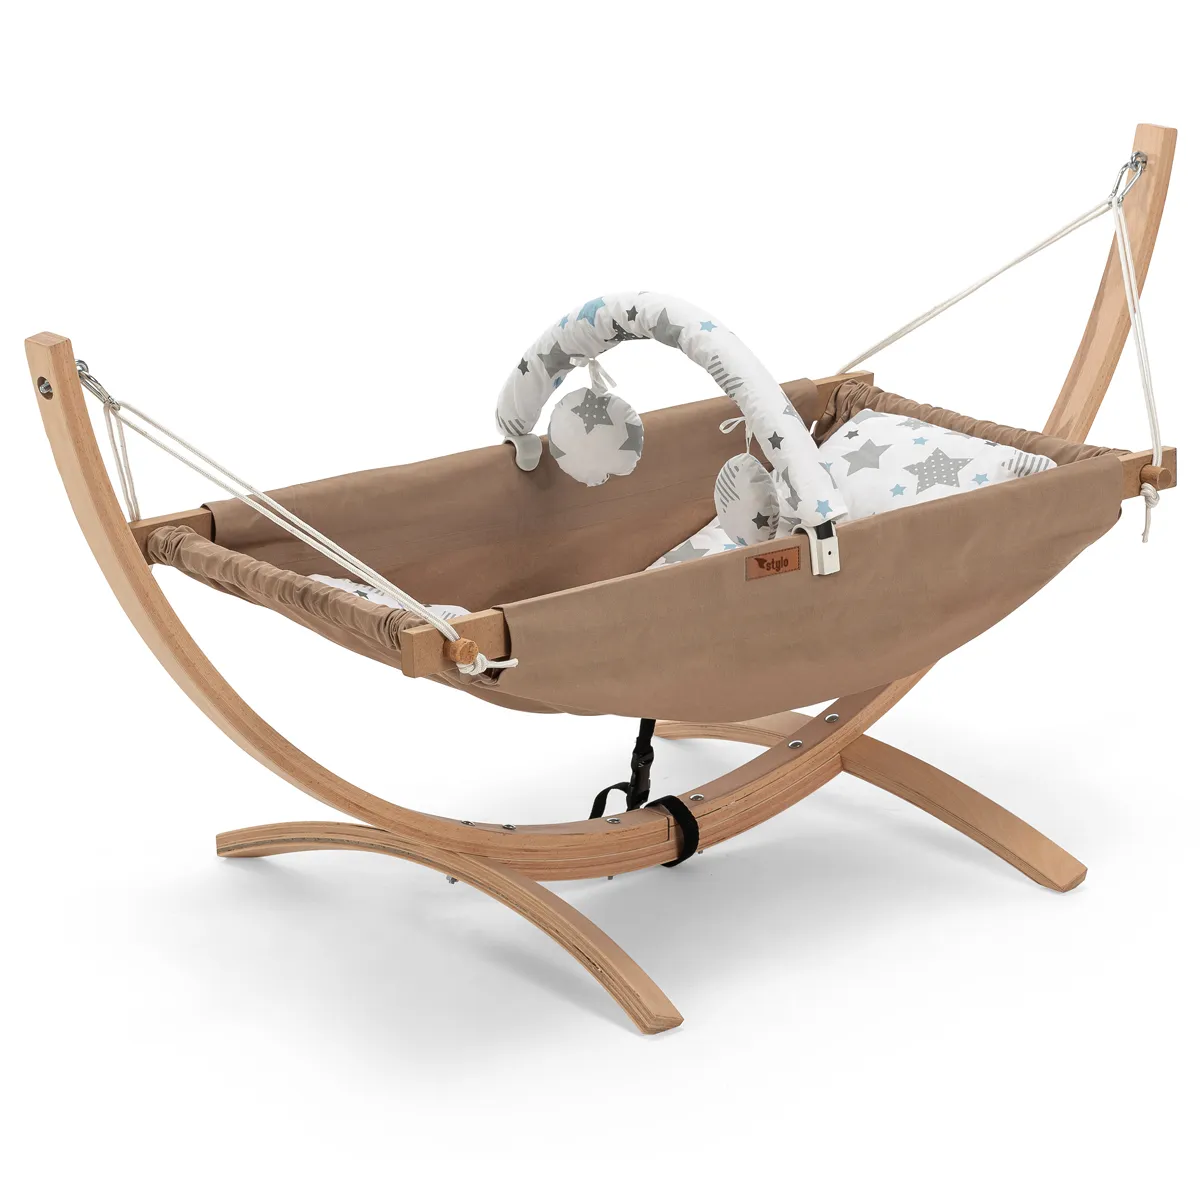 كرسي أرجوحة صغير محمول من الخشب الطبيعي الأفضل للاستخدام في الهواء الطلق أو داخل المنزل لرعاية الطفل